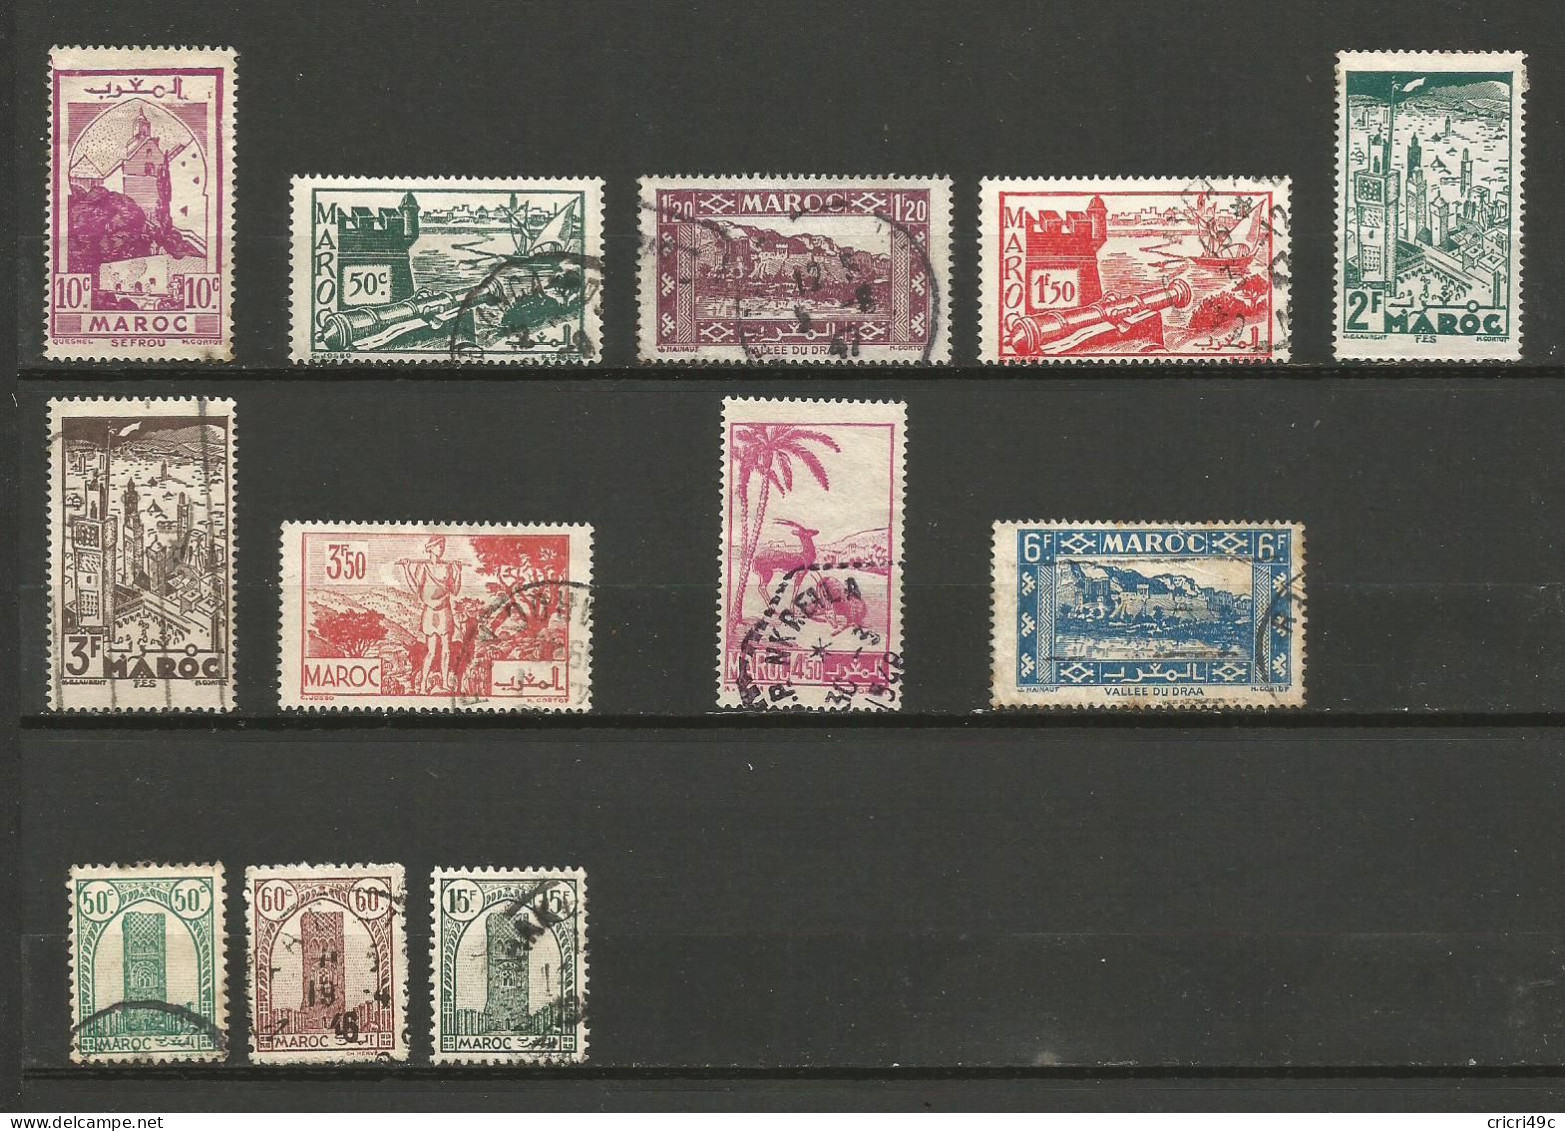 Maroc  1 Lot De 12 Timbres Oblitérés,  3 Timbres De 1943 -1944 Et 9 De 1945 à 1947 (A5) - Sammlungen (ohne Album)